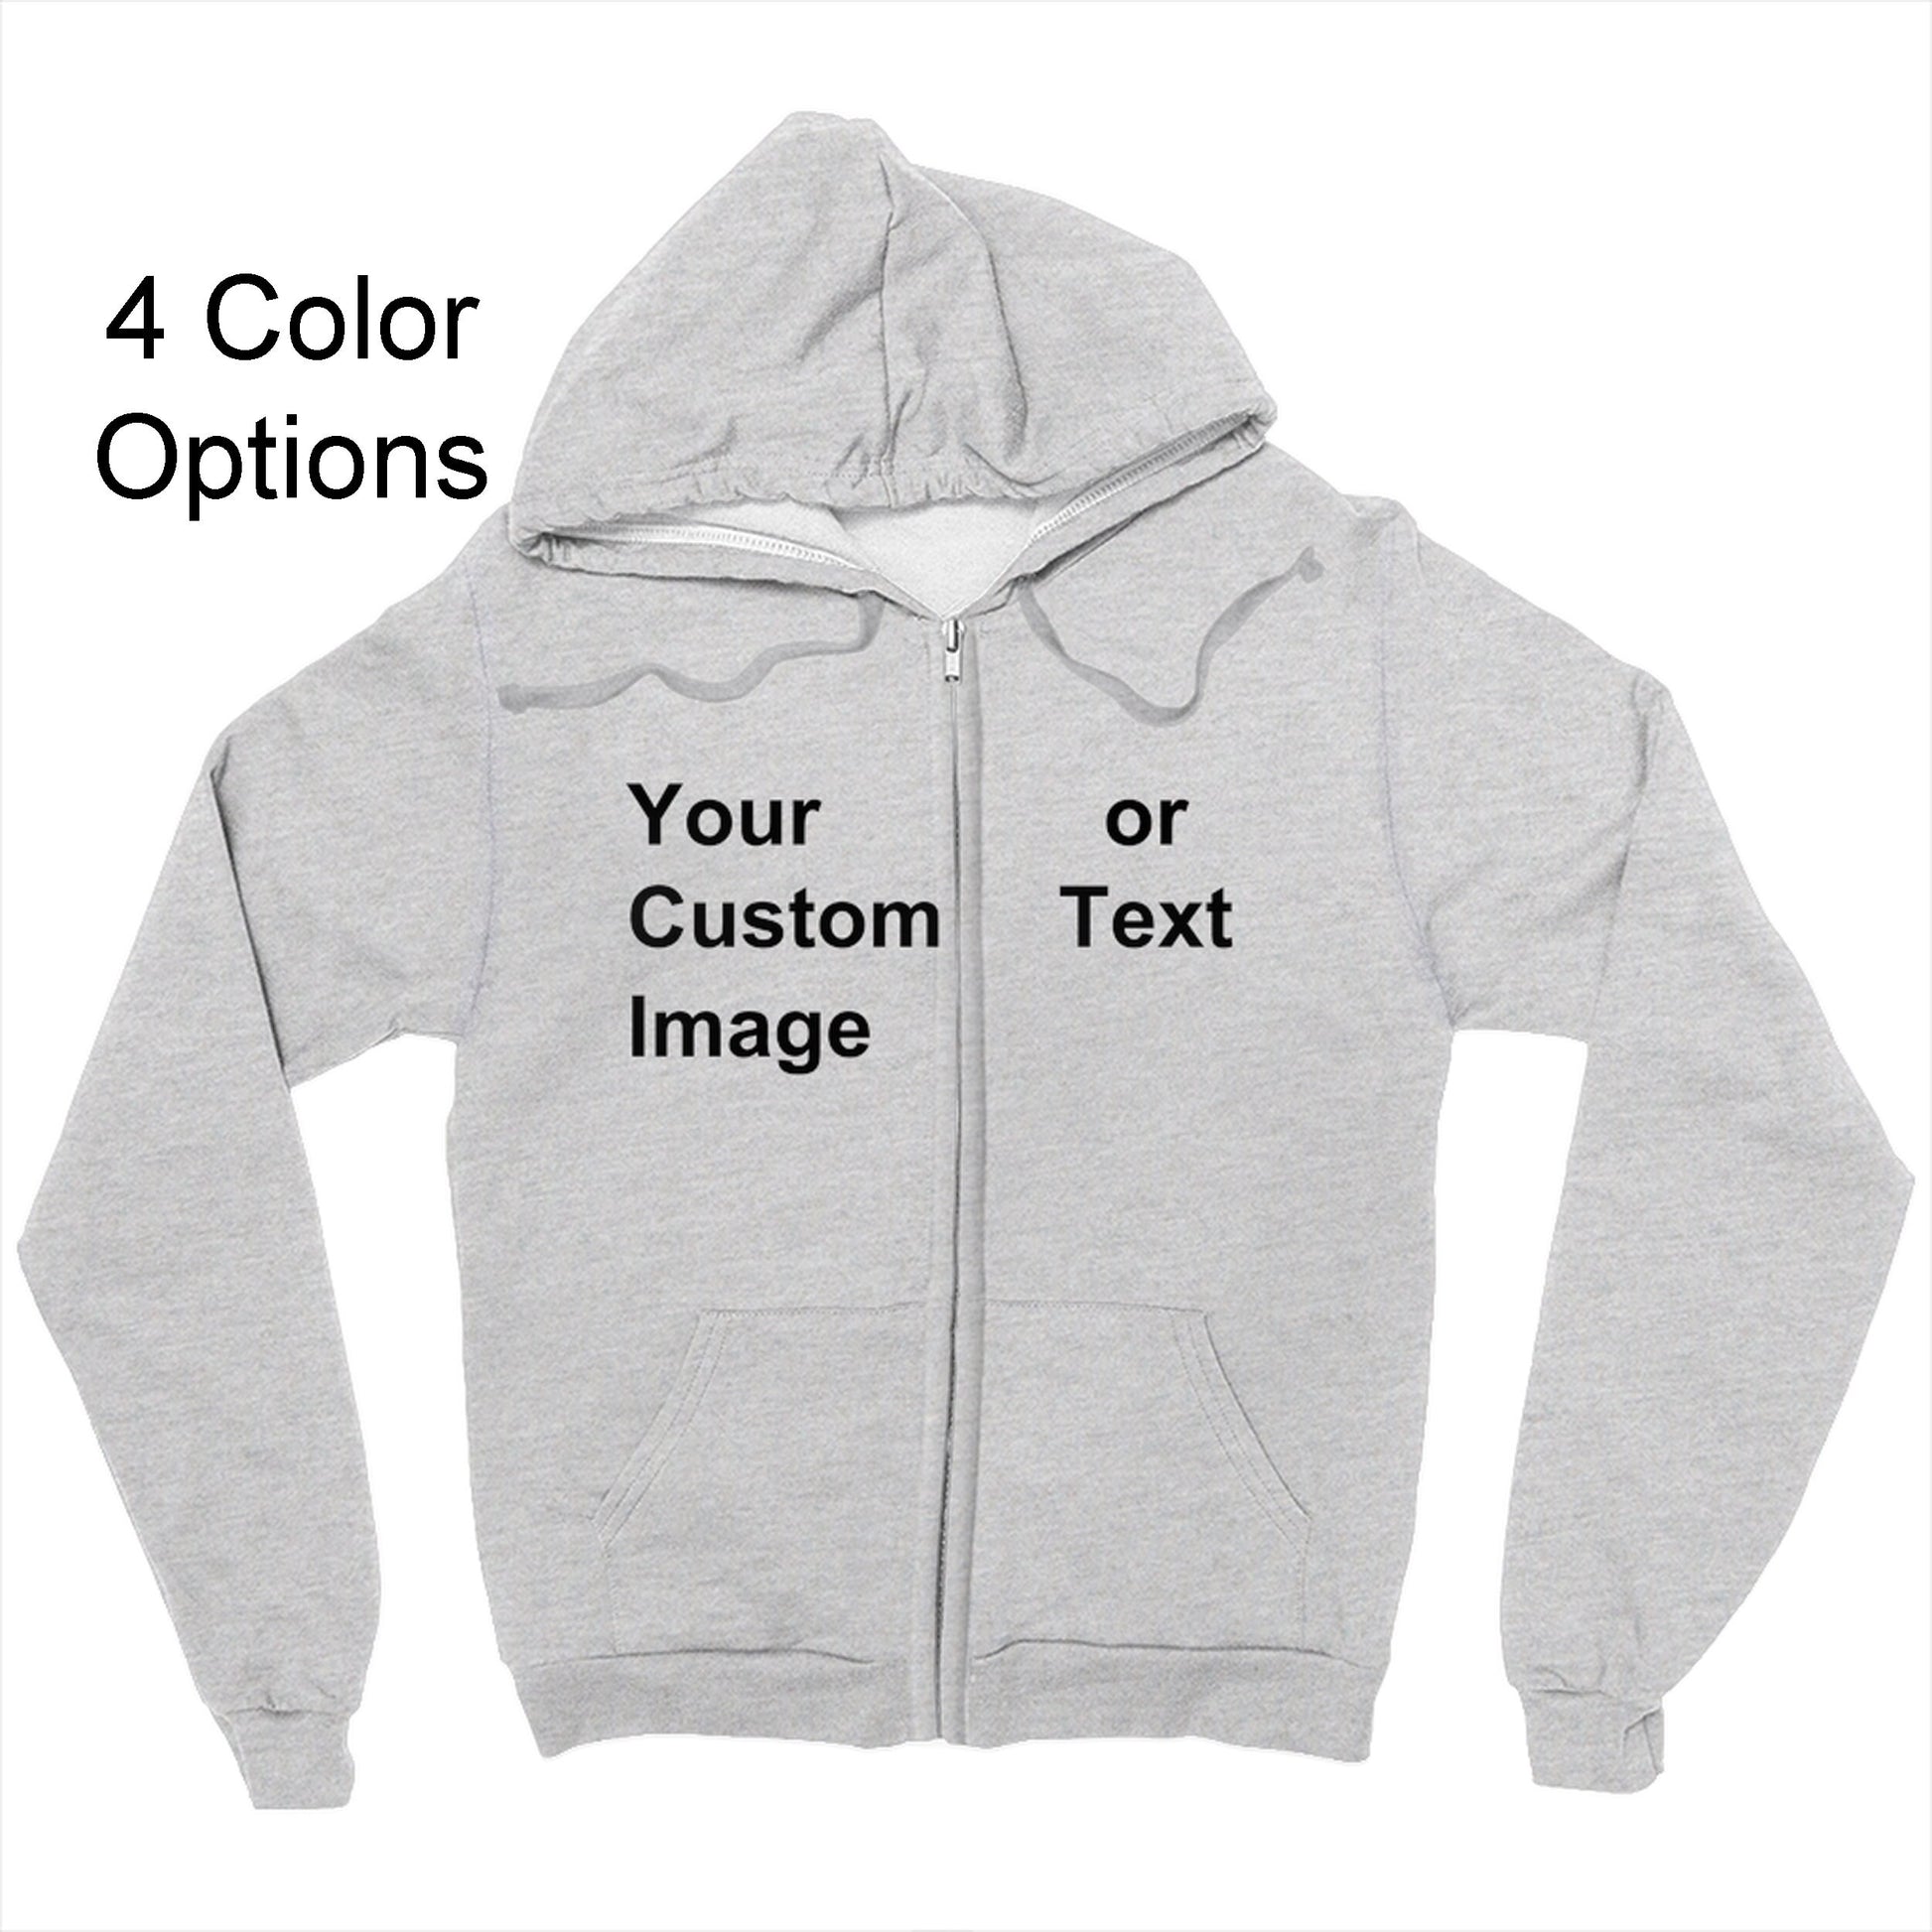 Custom Zipper Hoodie custom text hoody custom image zip photo hoodie personalized gift customized gifts personalised hoodies unique gift